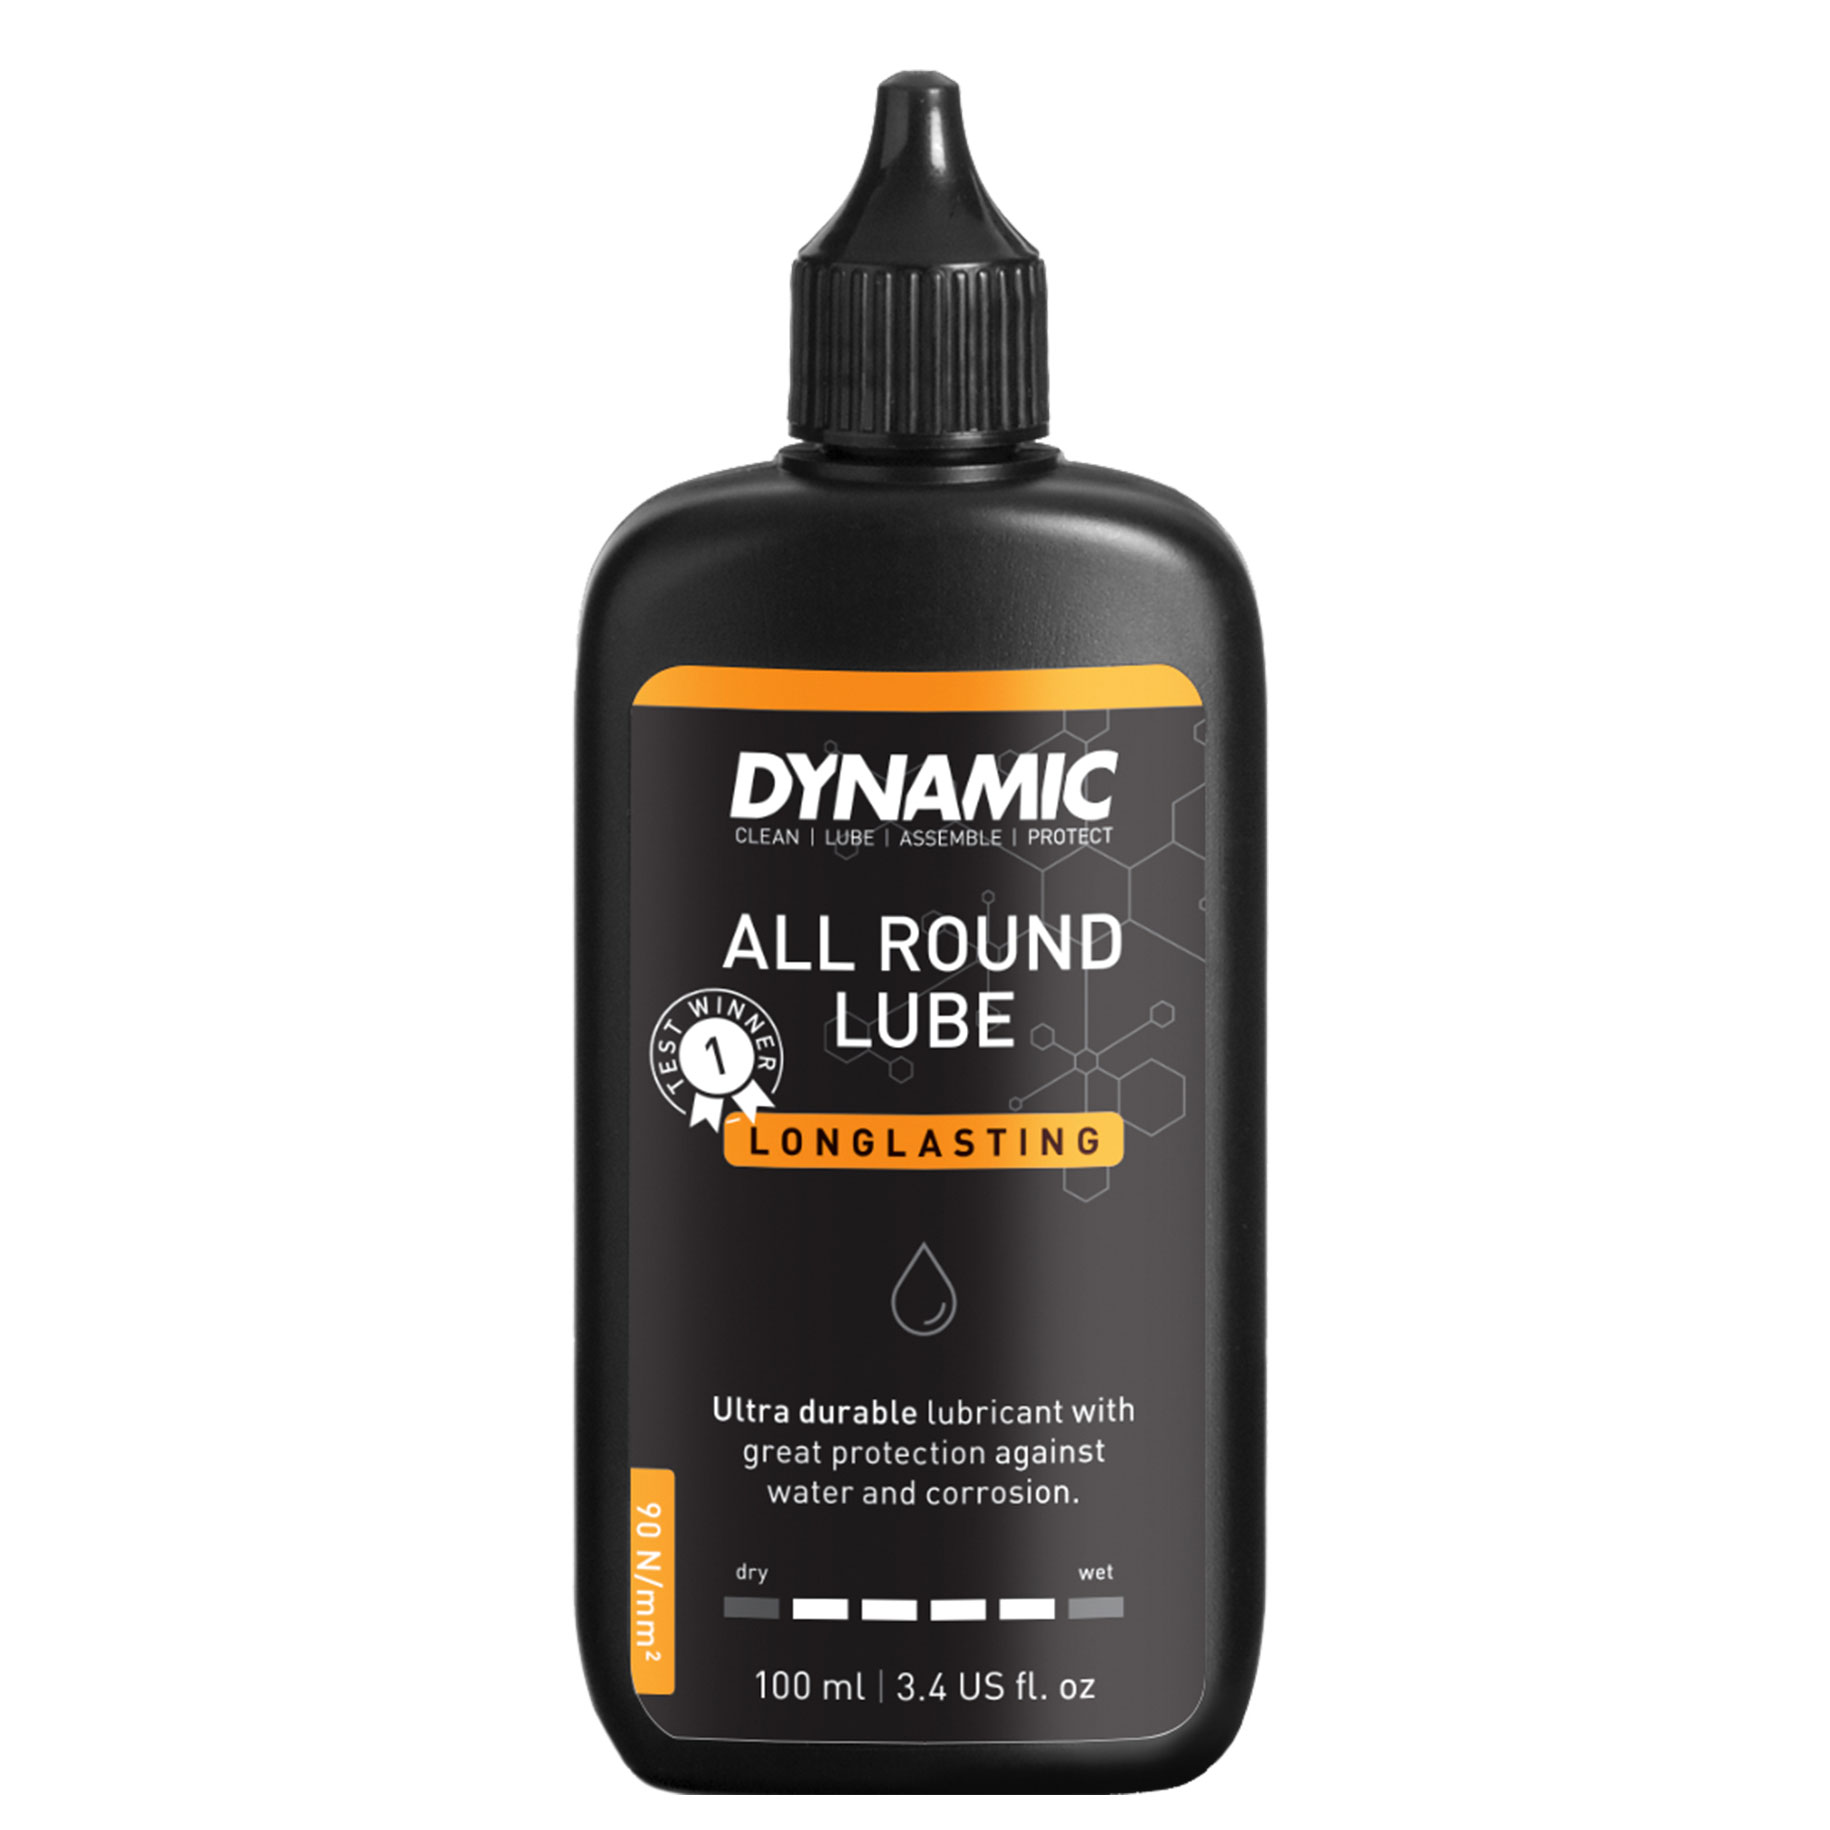 Productfoto van Dynamic All Round Lube - Kettingsmeermiddel - 100ml